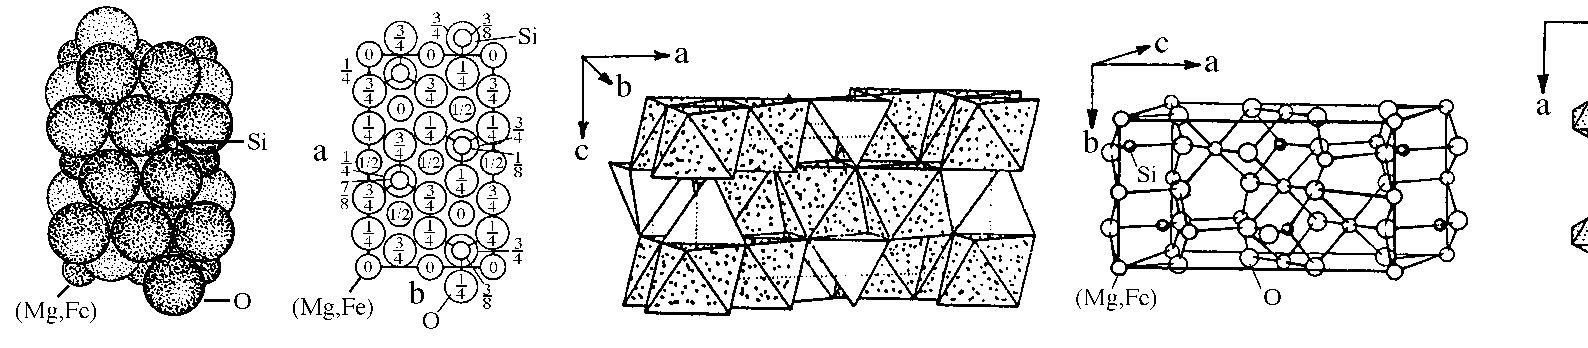 92 Abb. 3.3.6-4 Die Olivin-Struktur in unterschiedlichen Darstellungen (Evans, 1976, 11-4; Lima-de- Faria, 1994, S122).